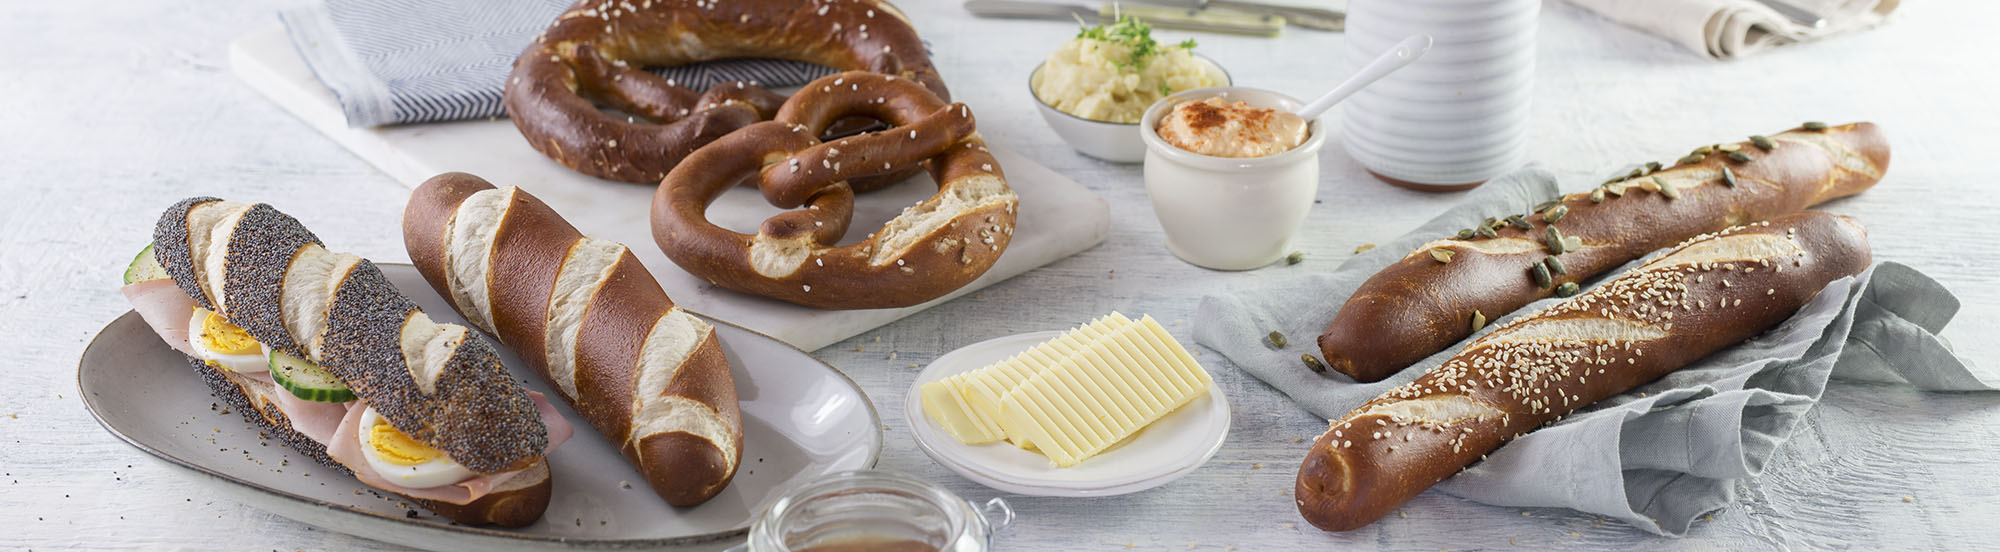 Für die Gastronomie bietet Haubis besondere Brot-und Gebäck-Spezialitäten